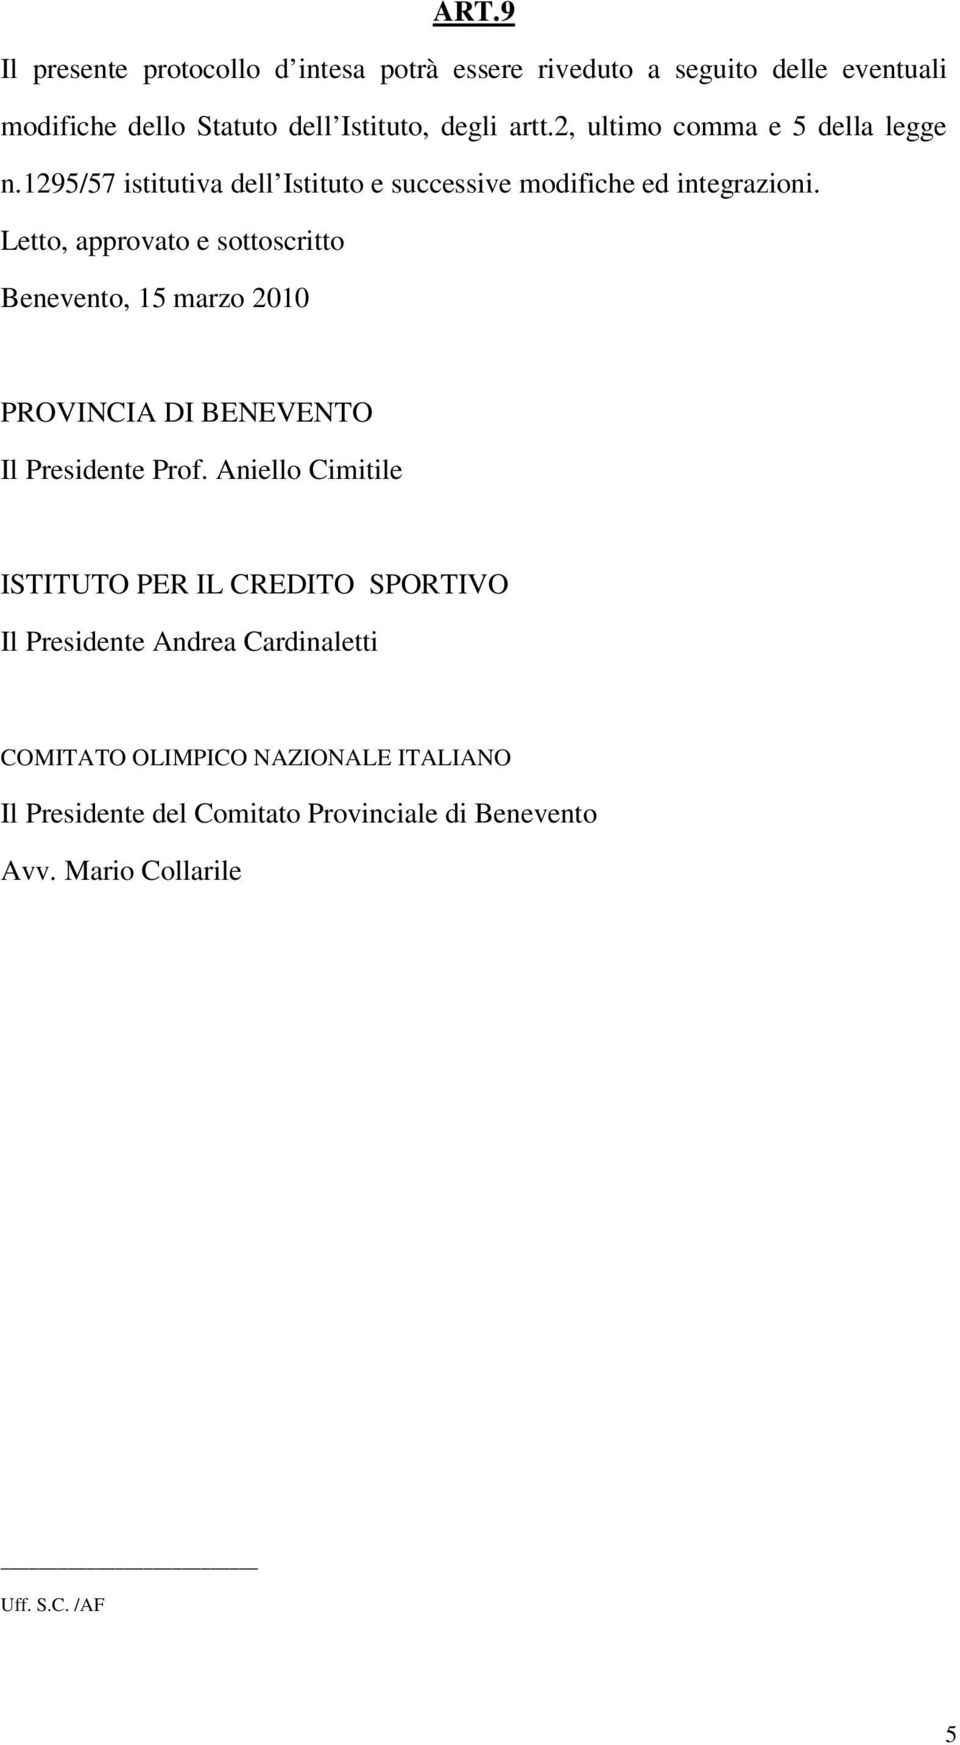 Letto, approvato e sottoscritto Benevento, 15 marzo 2010 PROVINCIA DI BENEVENTO Il Presidente Prof.